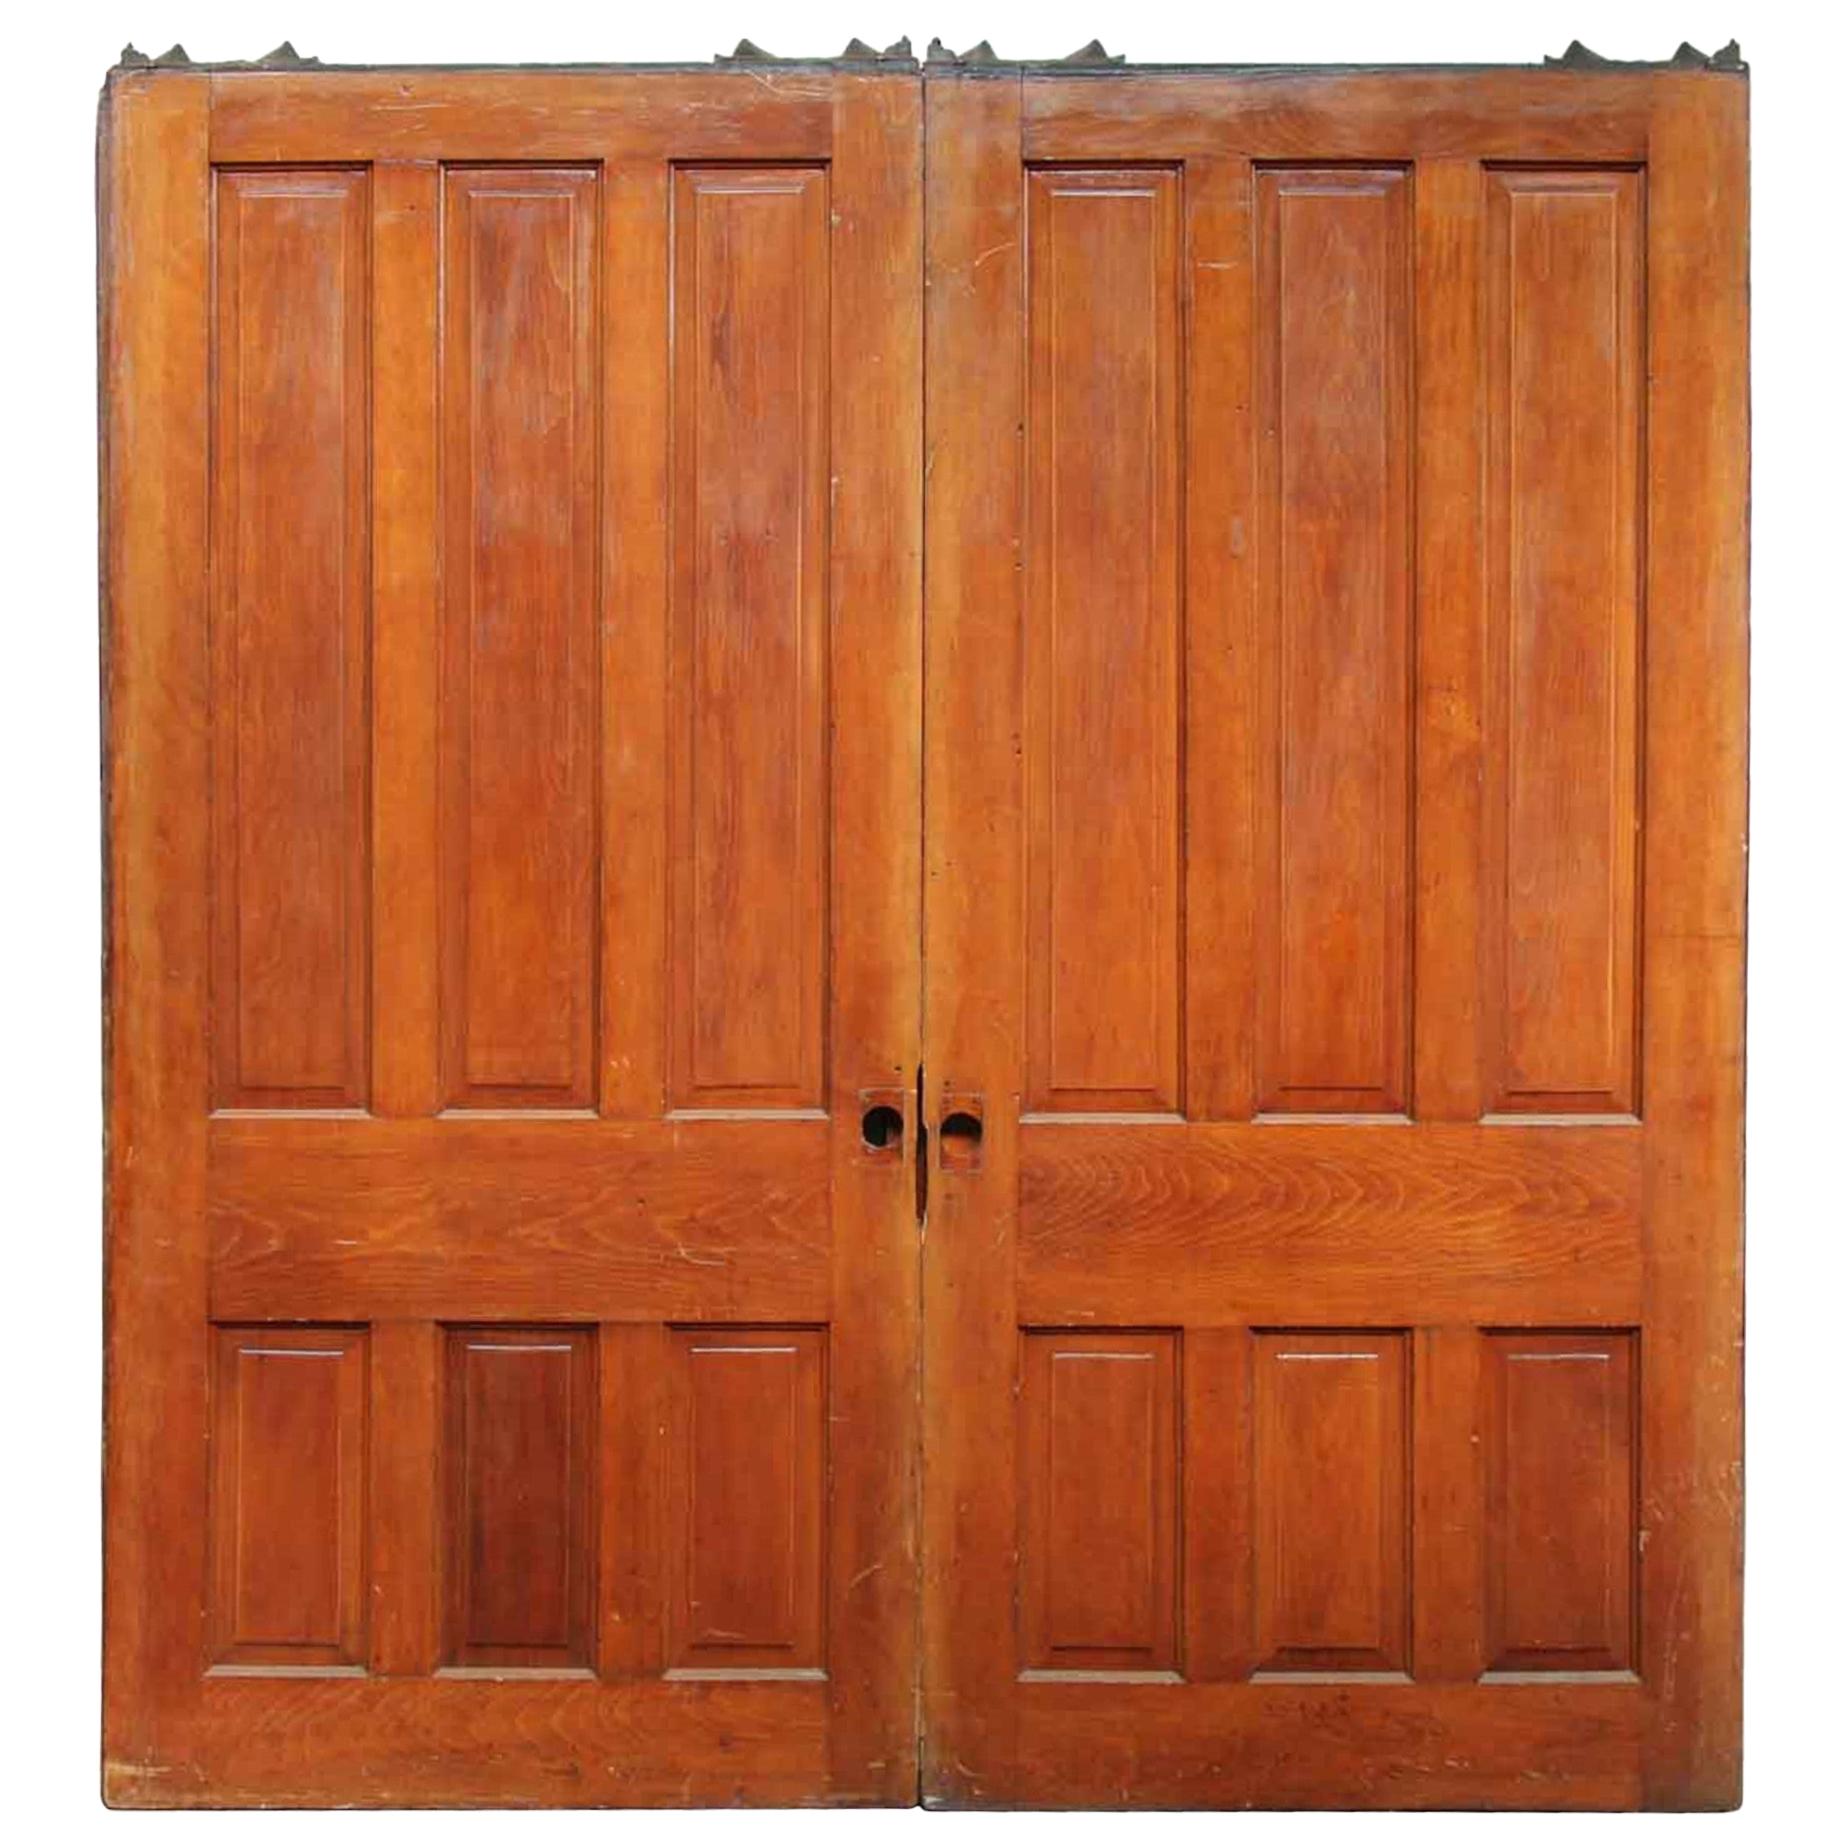 1890s Large Scale Antique Pocket Double Doors Six Panels Each